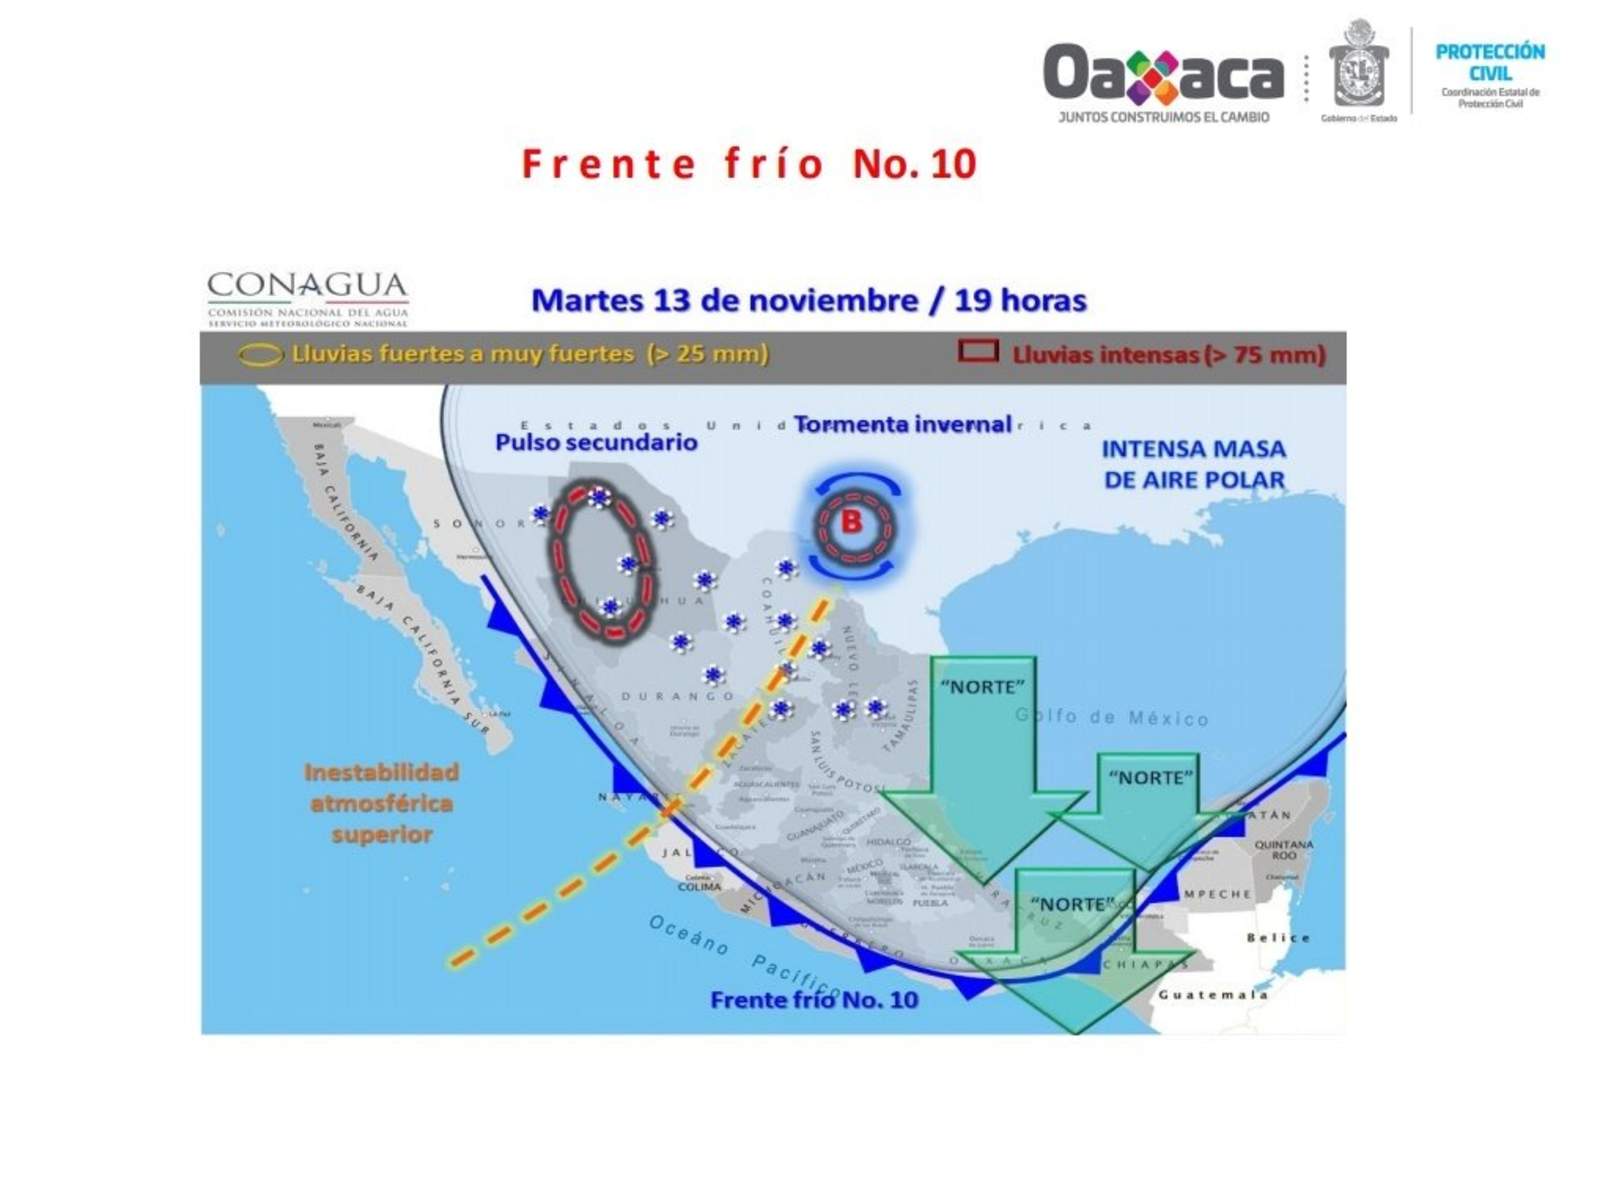 La Coordinación Estatal de Protección Civil de Oaxaca (Cepco) informó que se mantienen parcialmente cerrados los puertos de Salina Cruz y Huatulco a embarcaciones menores por los efectos del frente frío número 10 que generan “Evento Norte” en la entidad. (TWITTER)